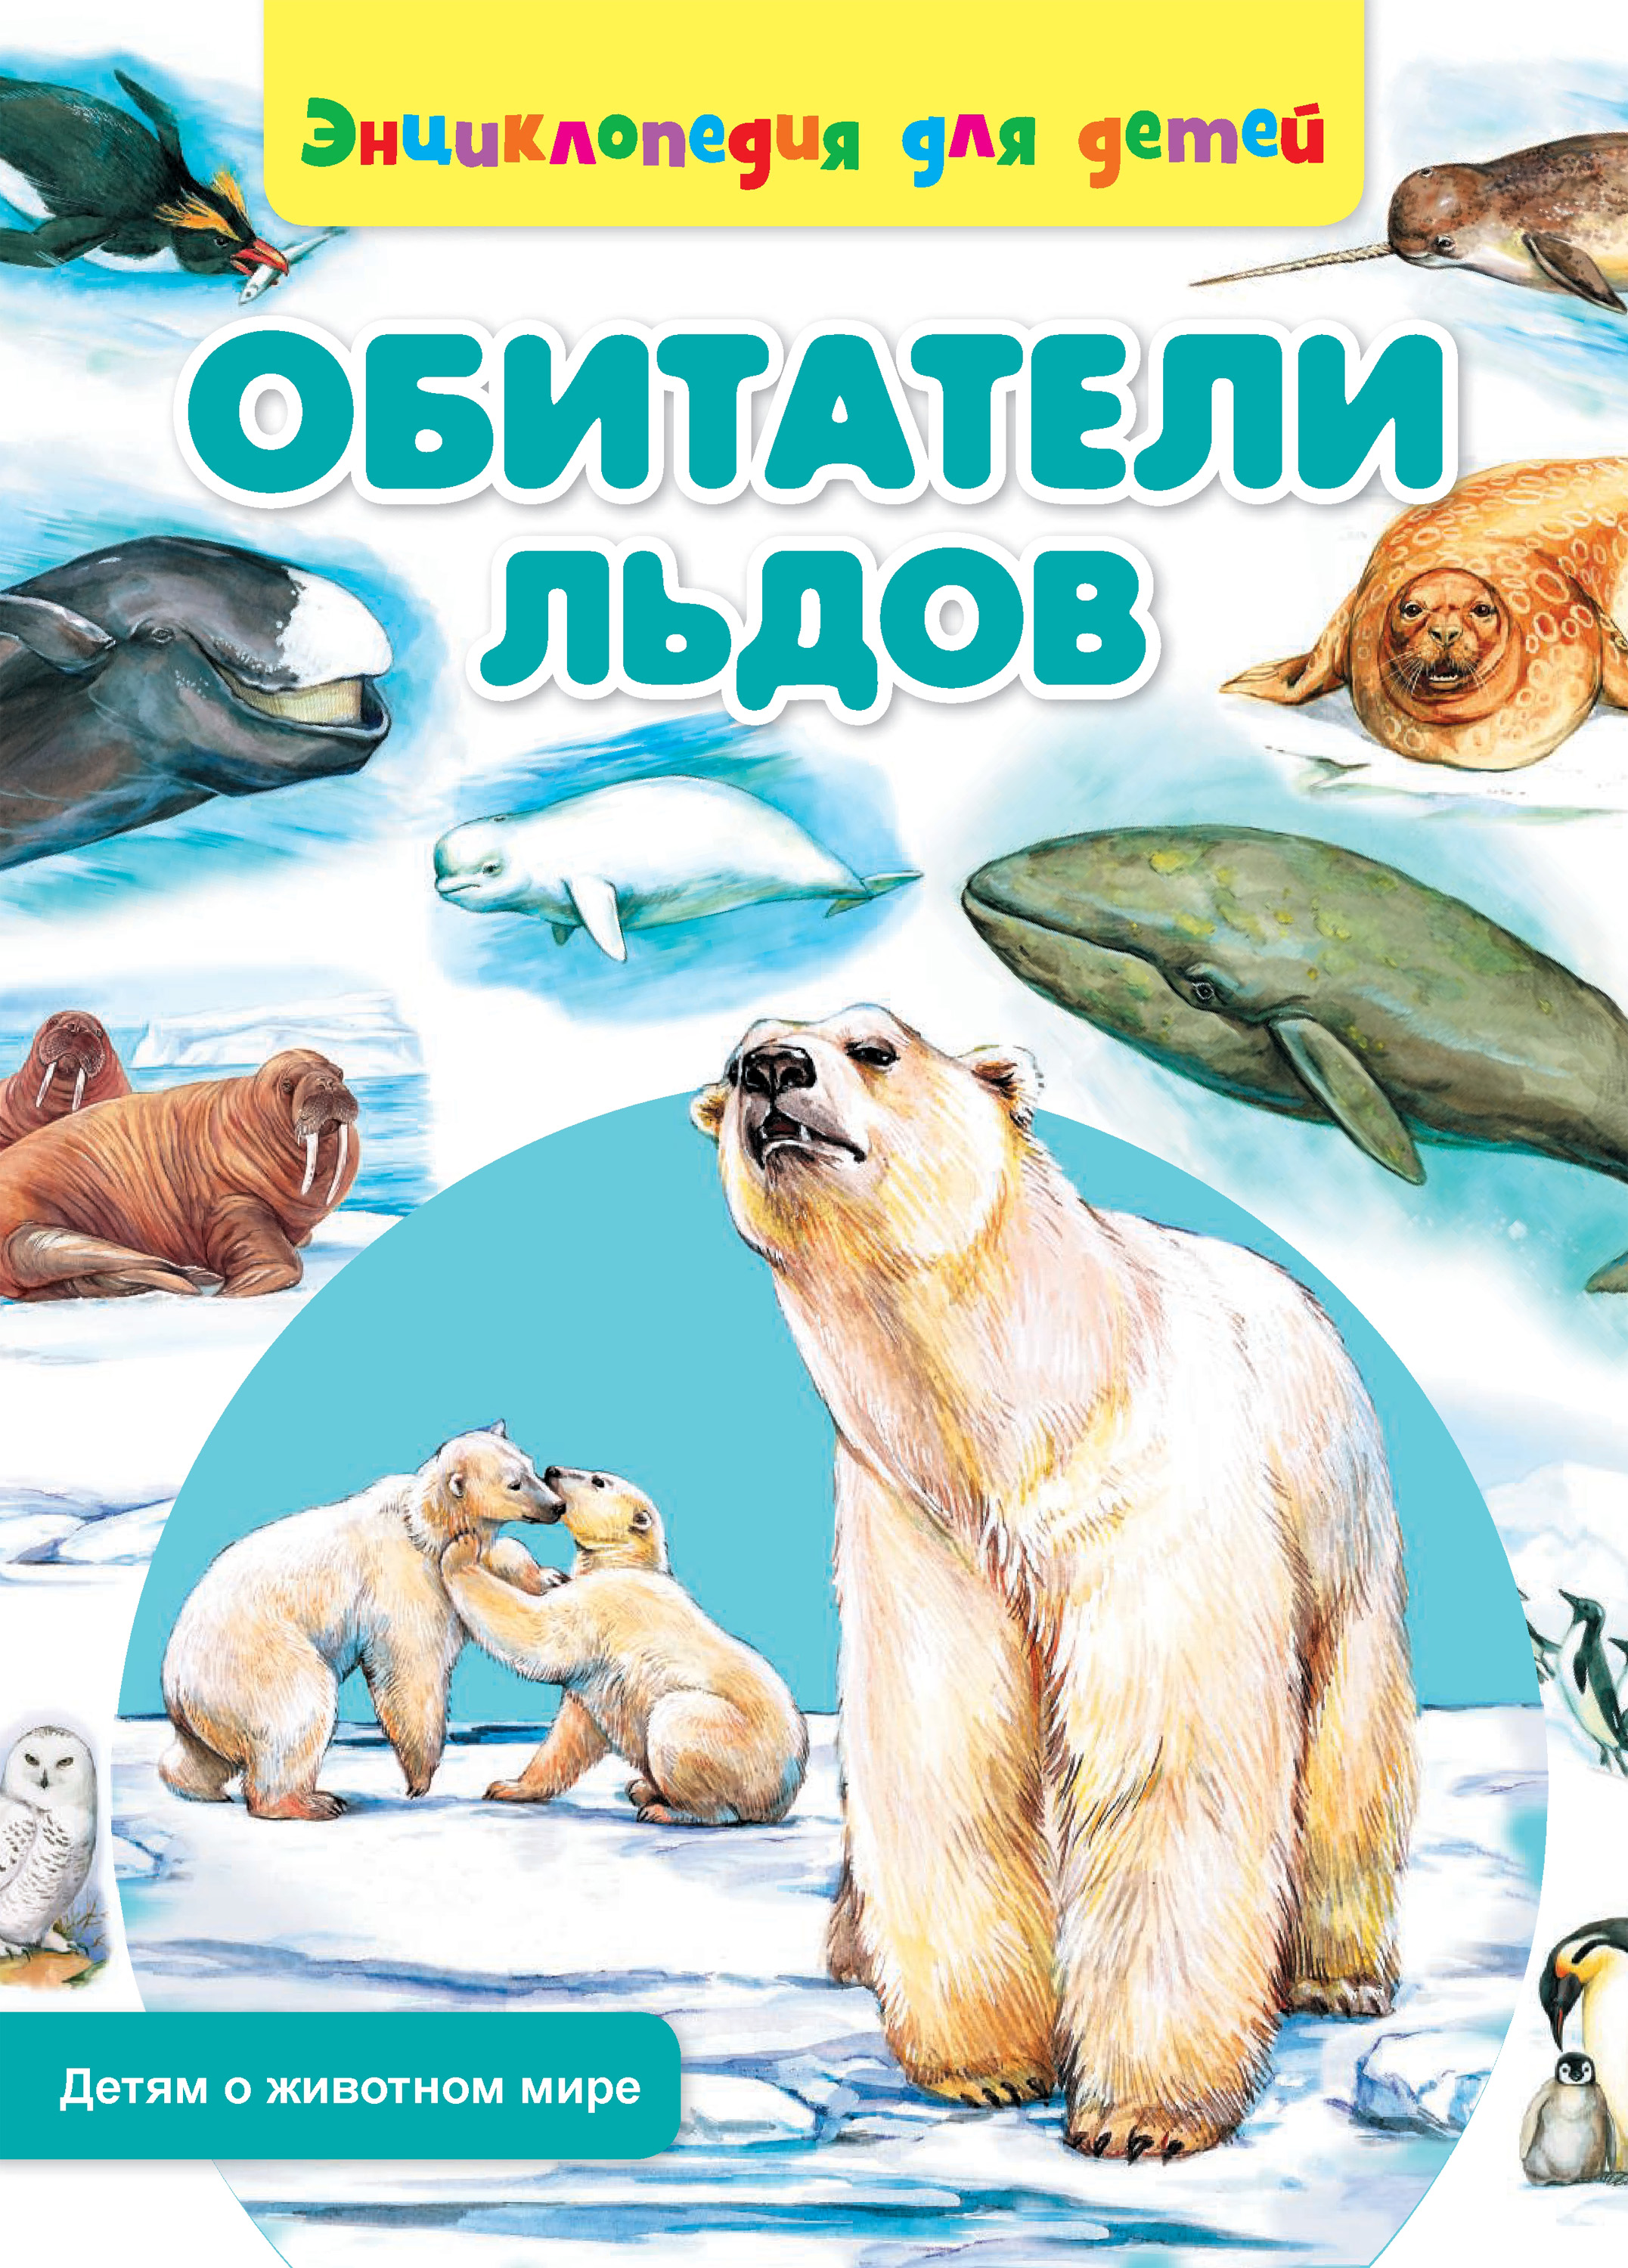 Обитатели льдов энциклопедия для детей